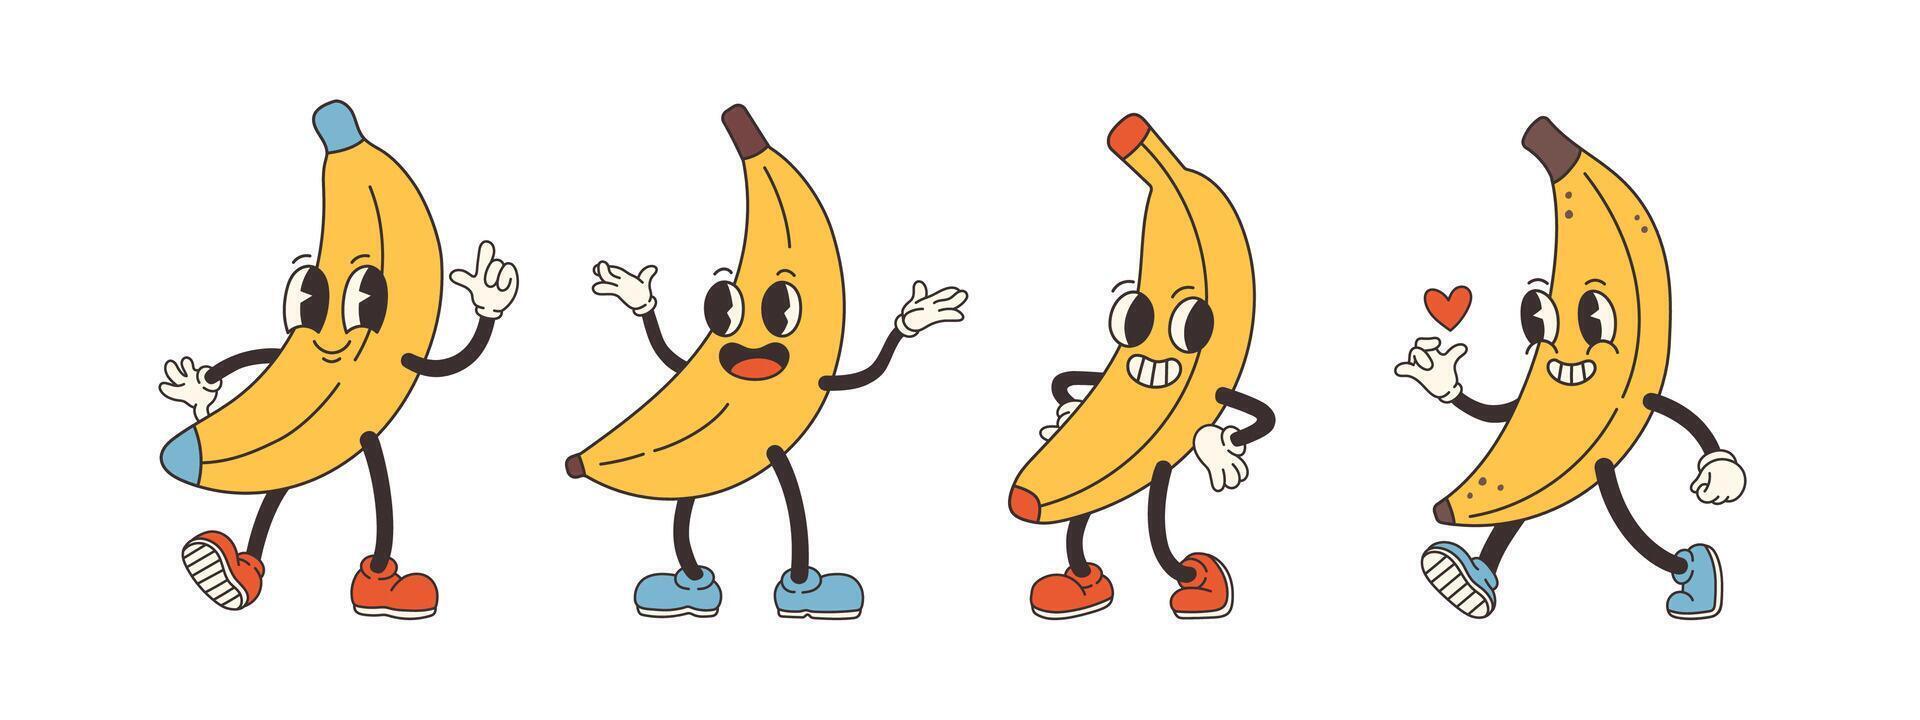 groovy banana definir. mão desenhar engraçado retro vintage na moda estilo banana desenho animado personagem ilustração. rabisco quadrinho coleção. vetor ilustração